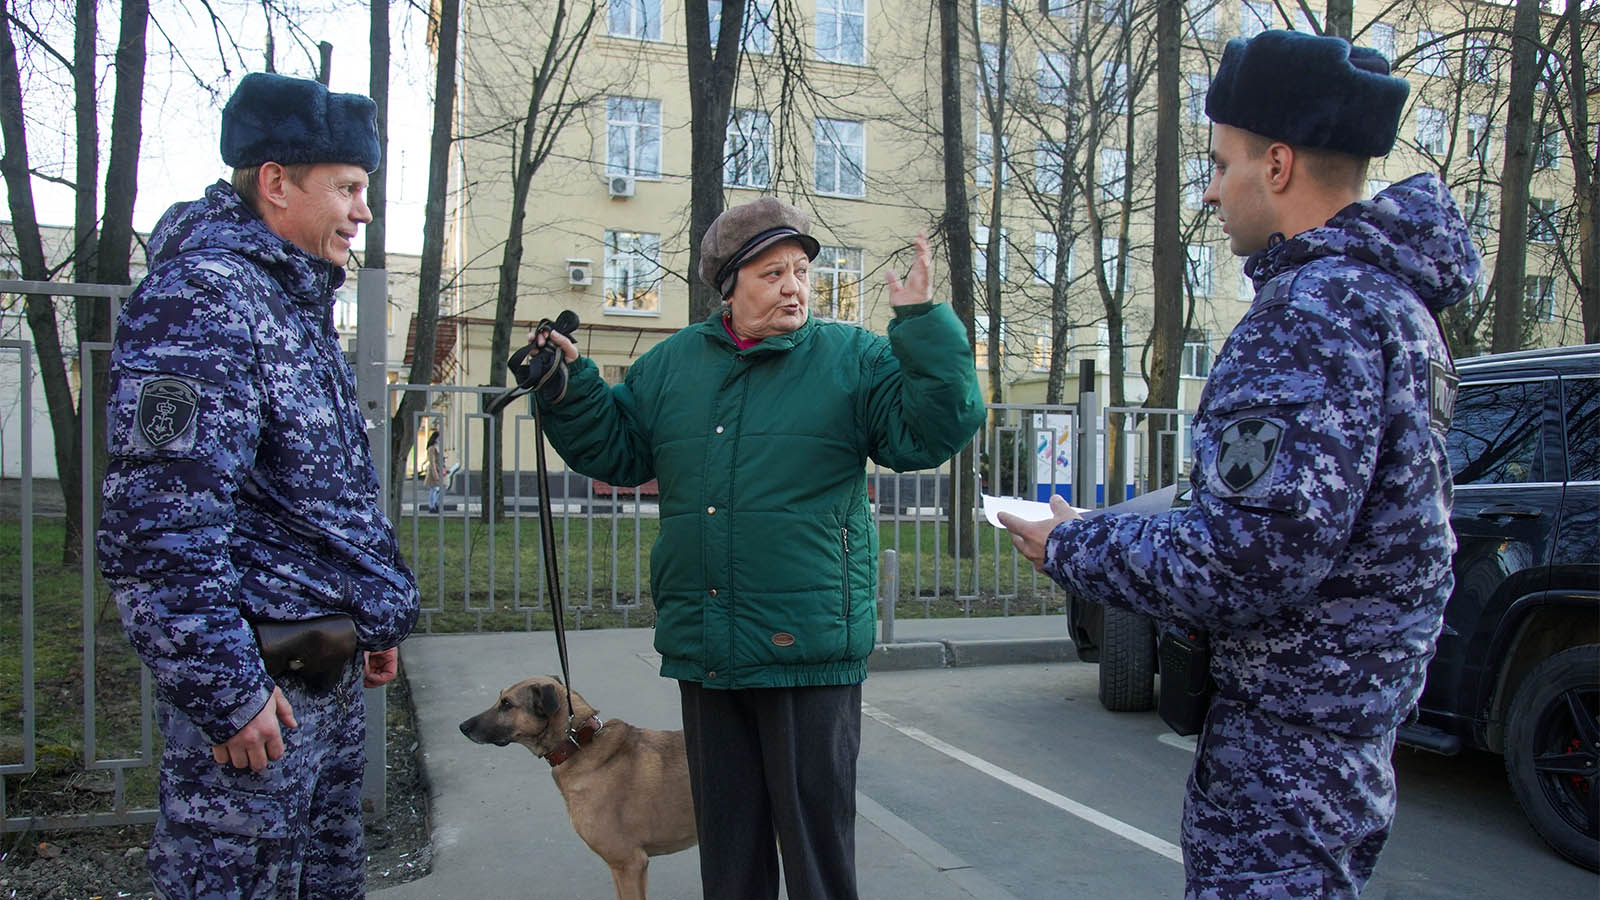 אנשי המשמר האזרחי מדברים עם אזרחית ותיקה בפארק במוסקבה על הוראות לסגר לאזרחים ותיקים ובעלי מחלות רקע. 25 במרץ (AP Photo/Aleksandr Avilov)